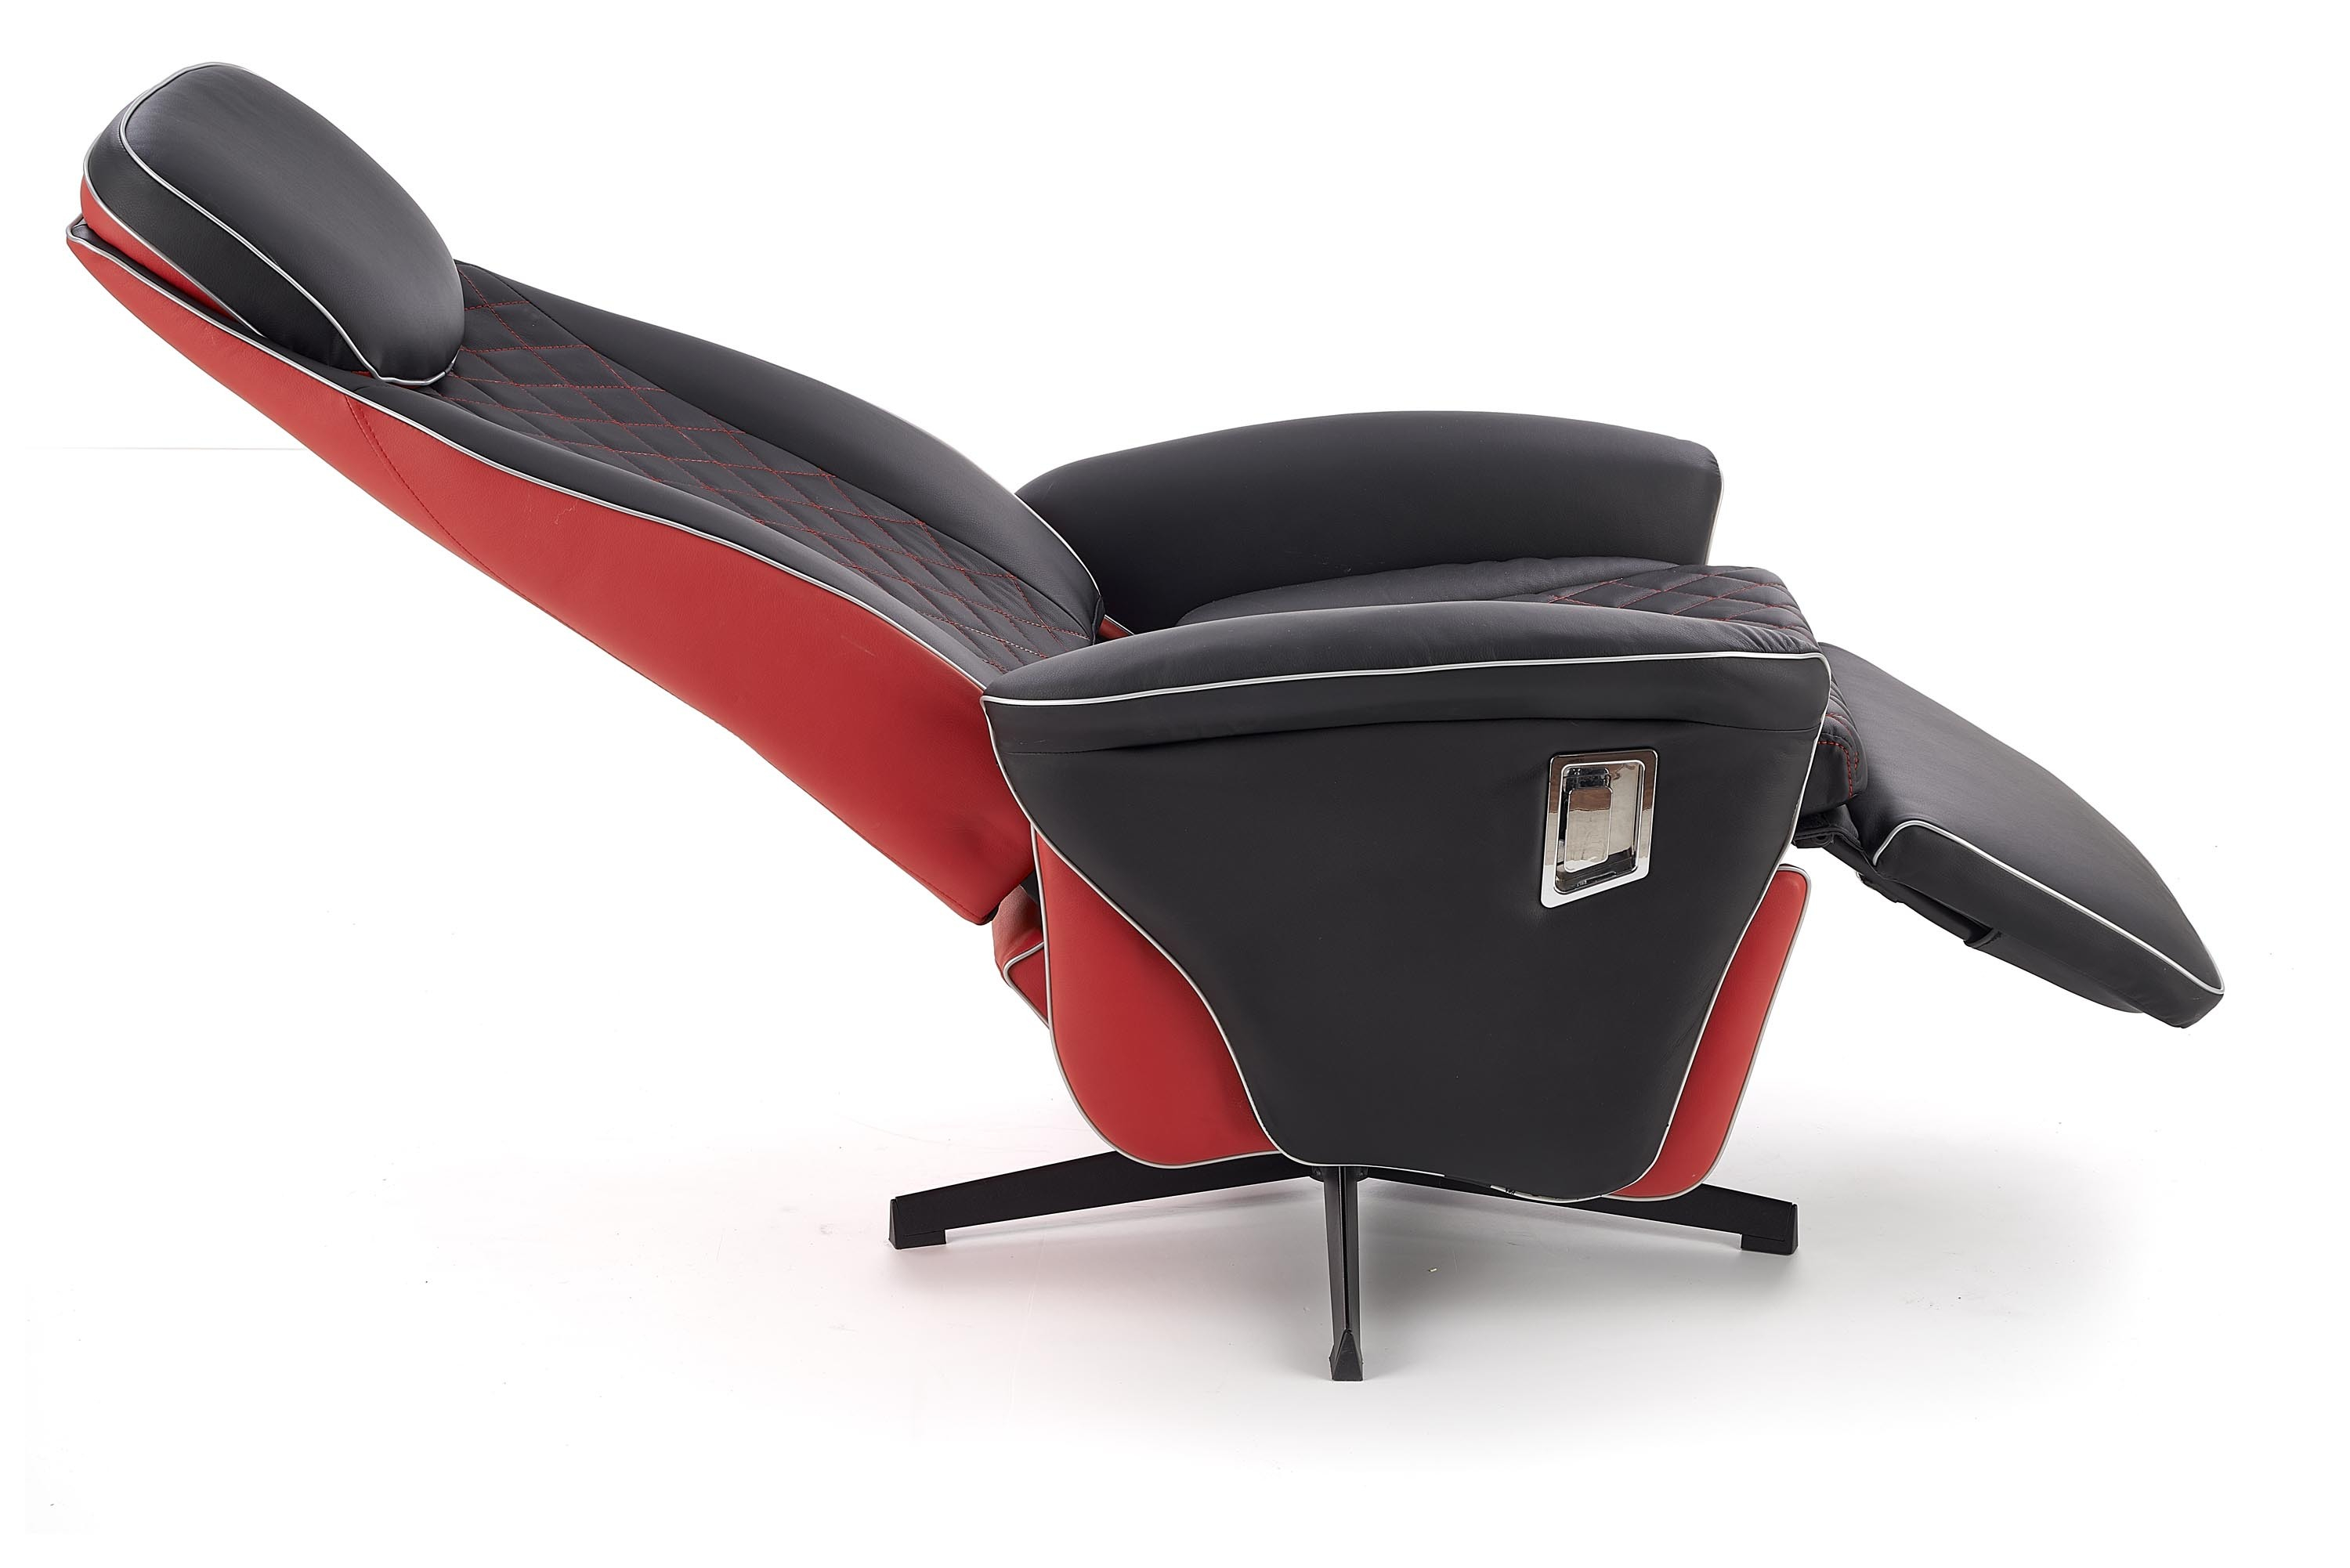 CAMARO fotel wypoczynkowy czarny / czerwony (1p=1szt)